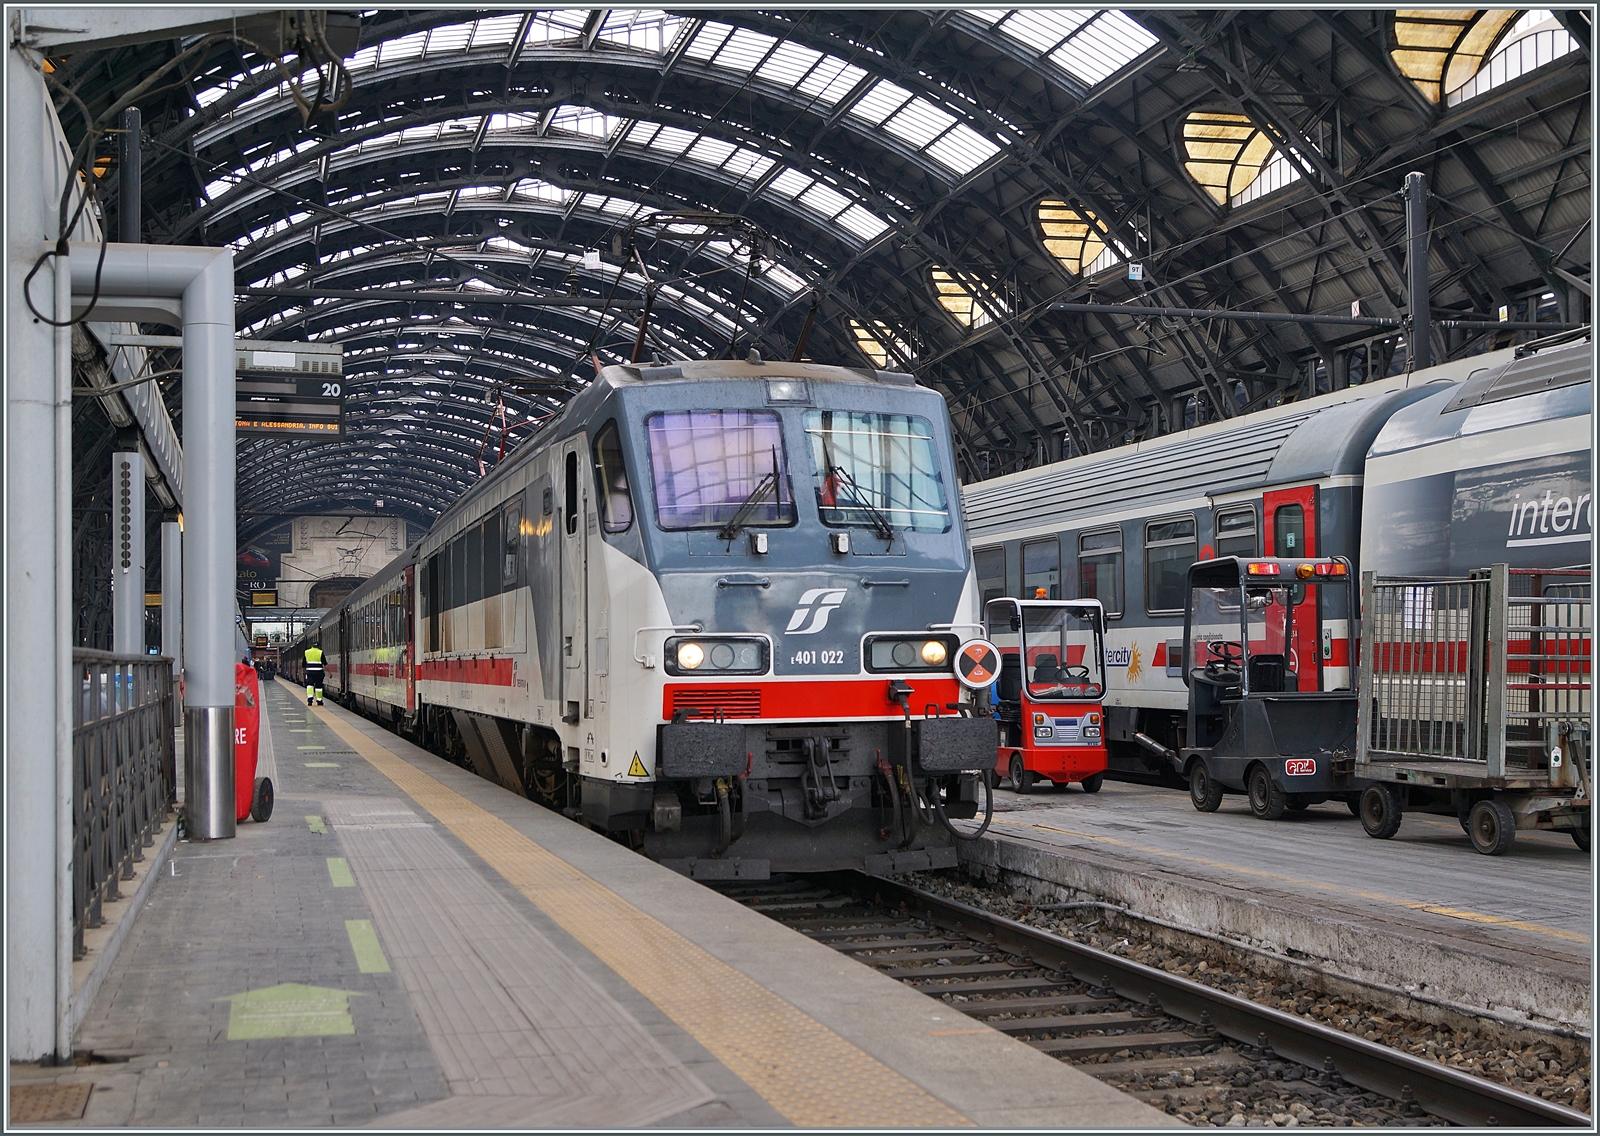 Eine weitere E-Lok wartet auf einem der hintersten Gleise ebenfalls mit einen Intercity auf  ihre Abfahrt: Die FS Trenitalia E 401 022. 

8. November 2022